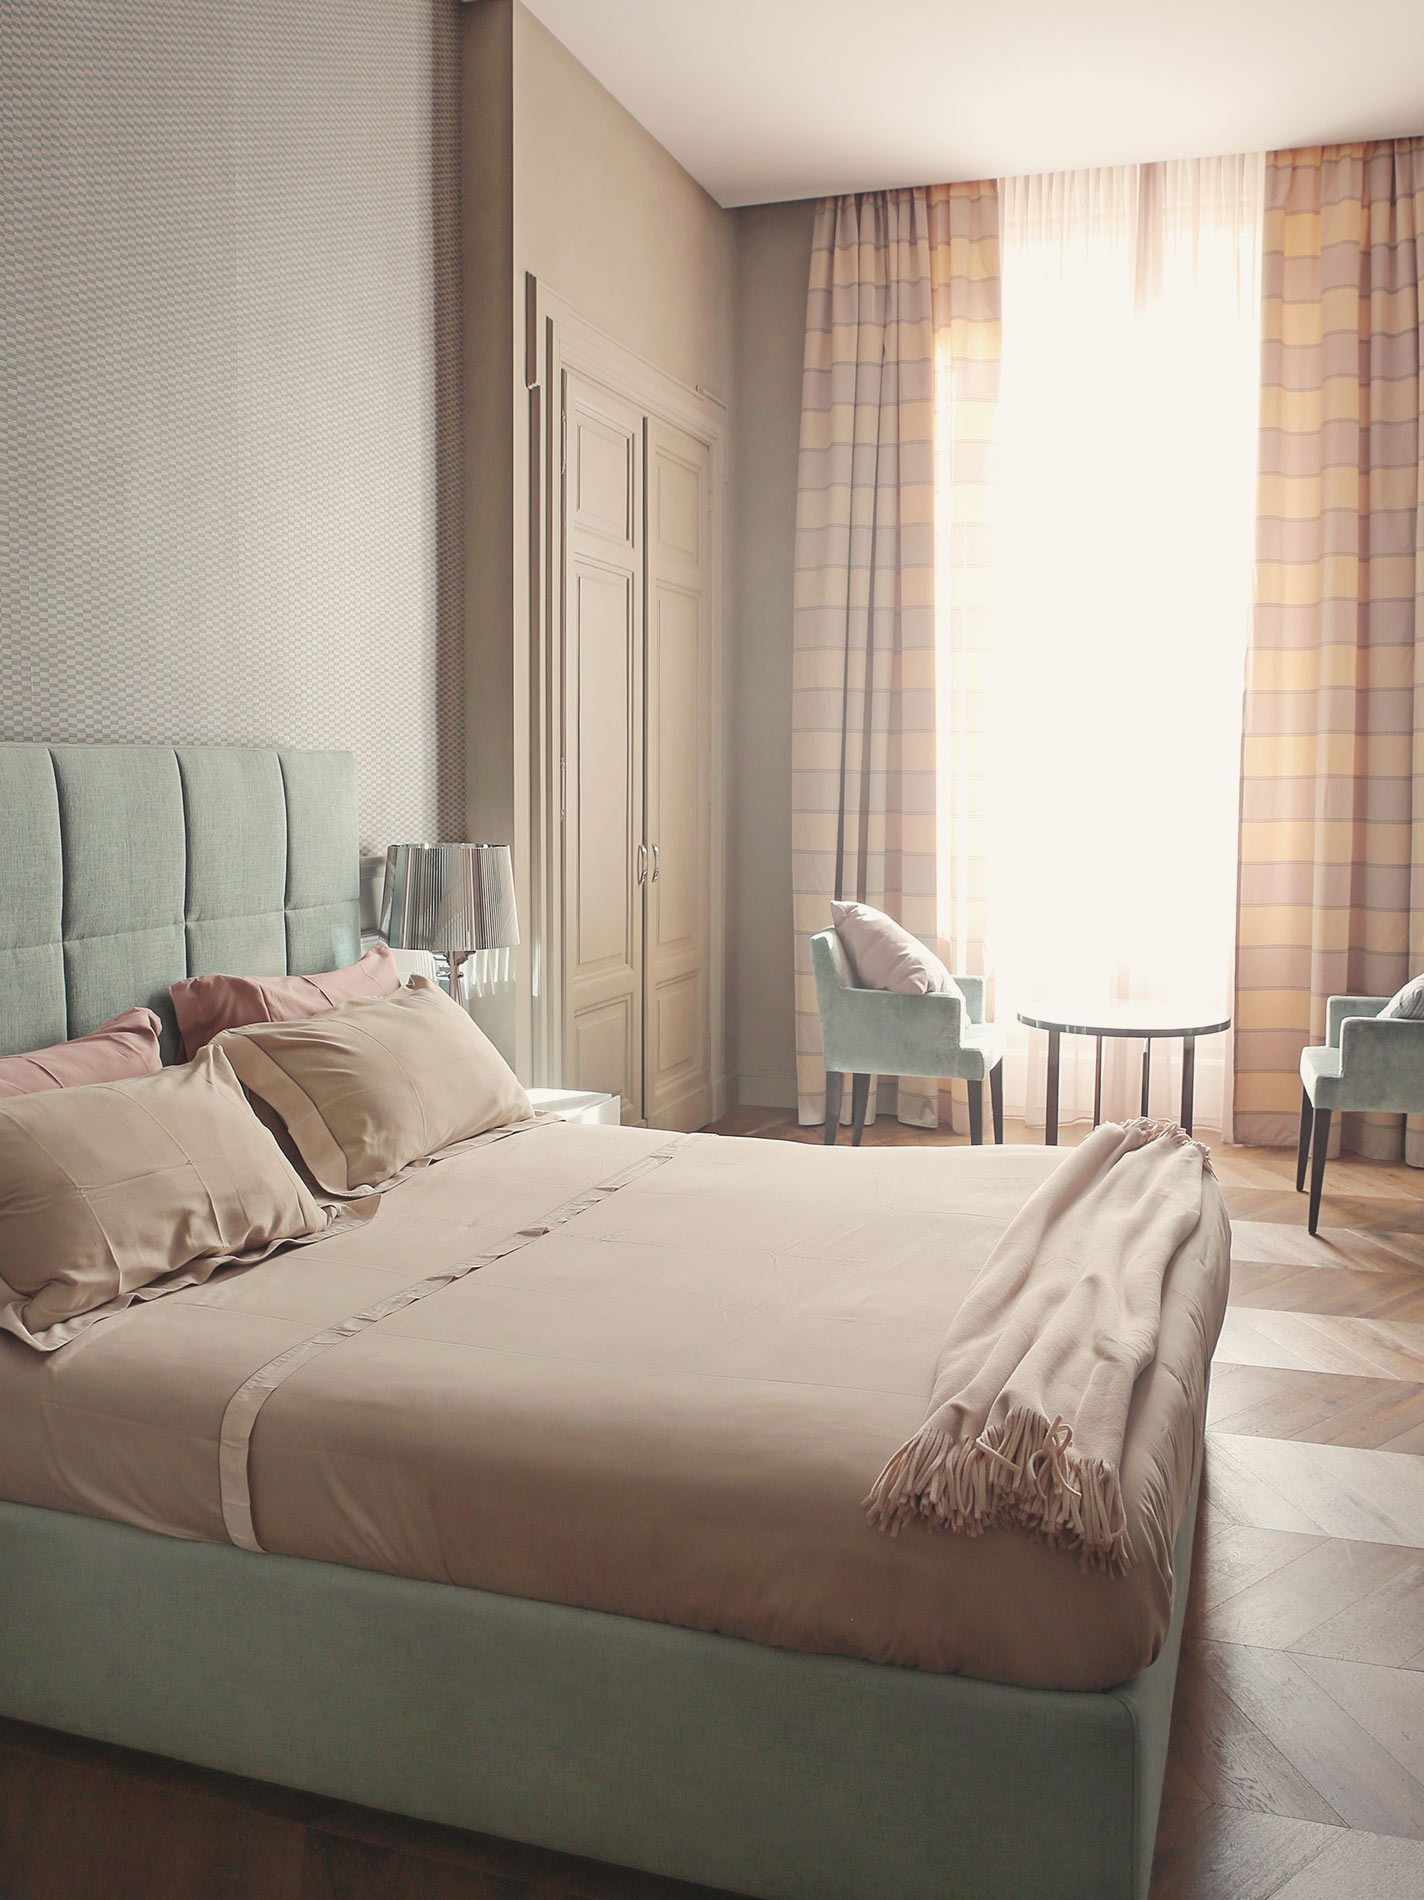 Pretty Hotels: Le Quattro Dame (Image 2)